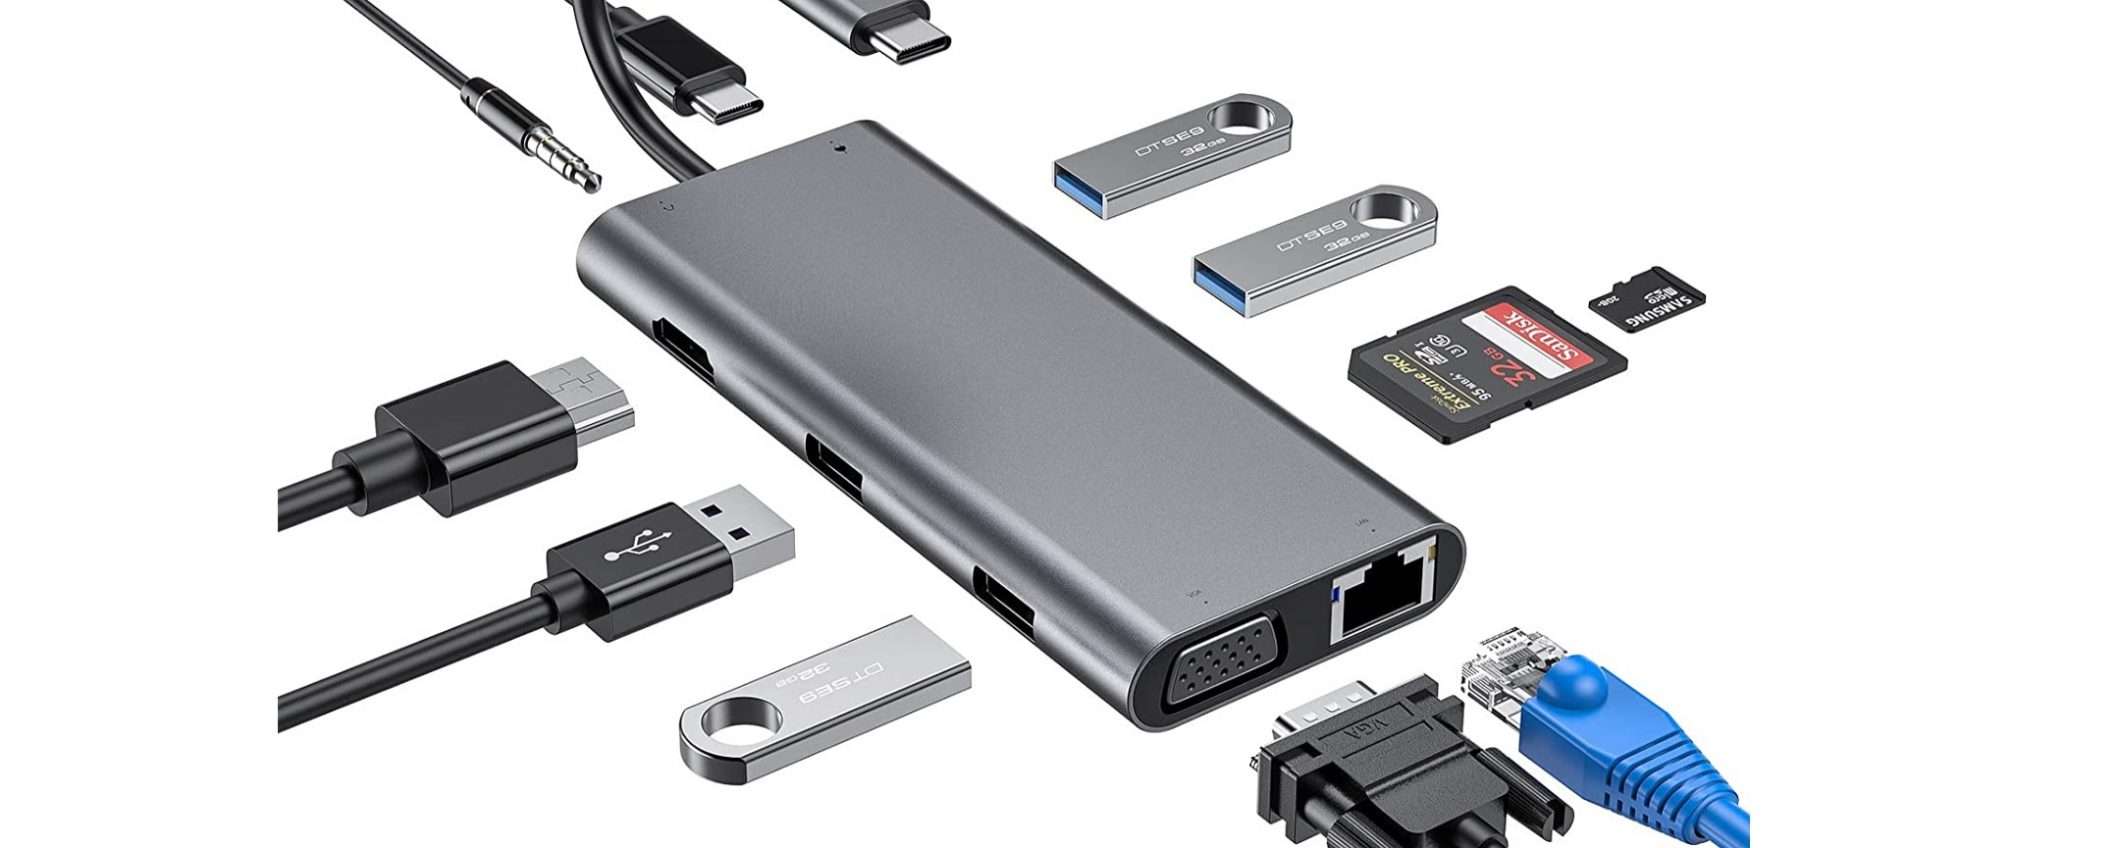 HUB USB-C 11 in 1 HDMI 4K per Mac e PC in offerta